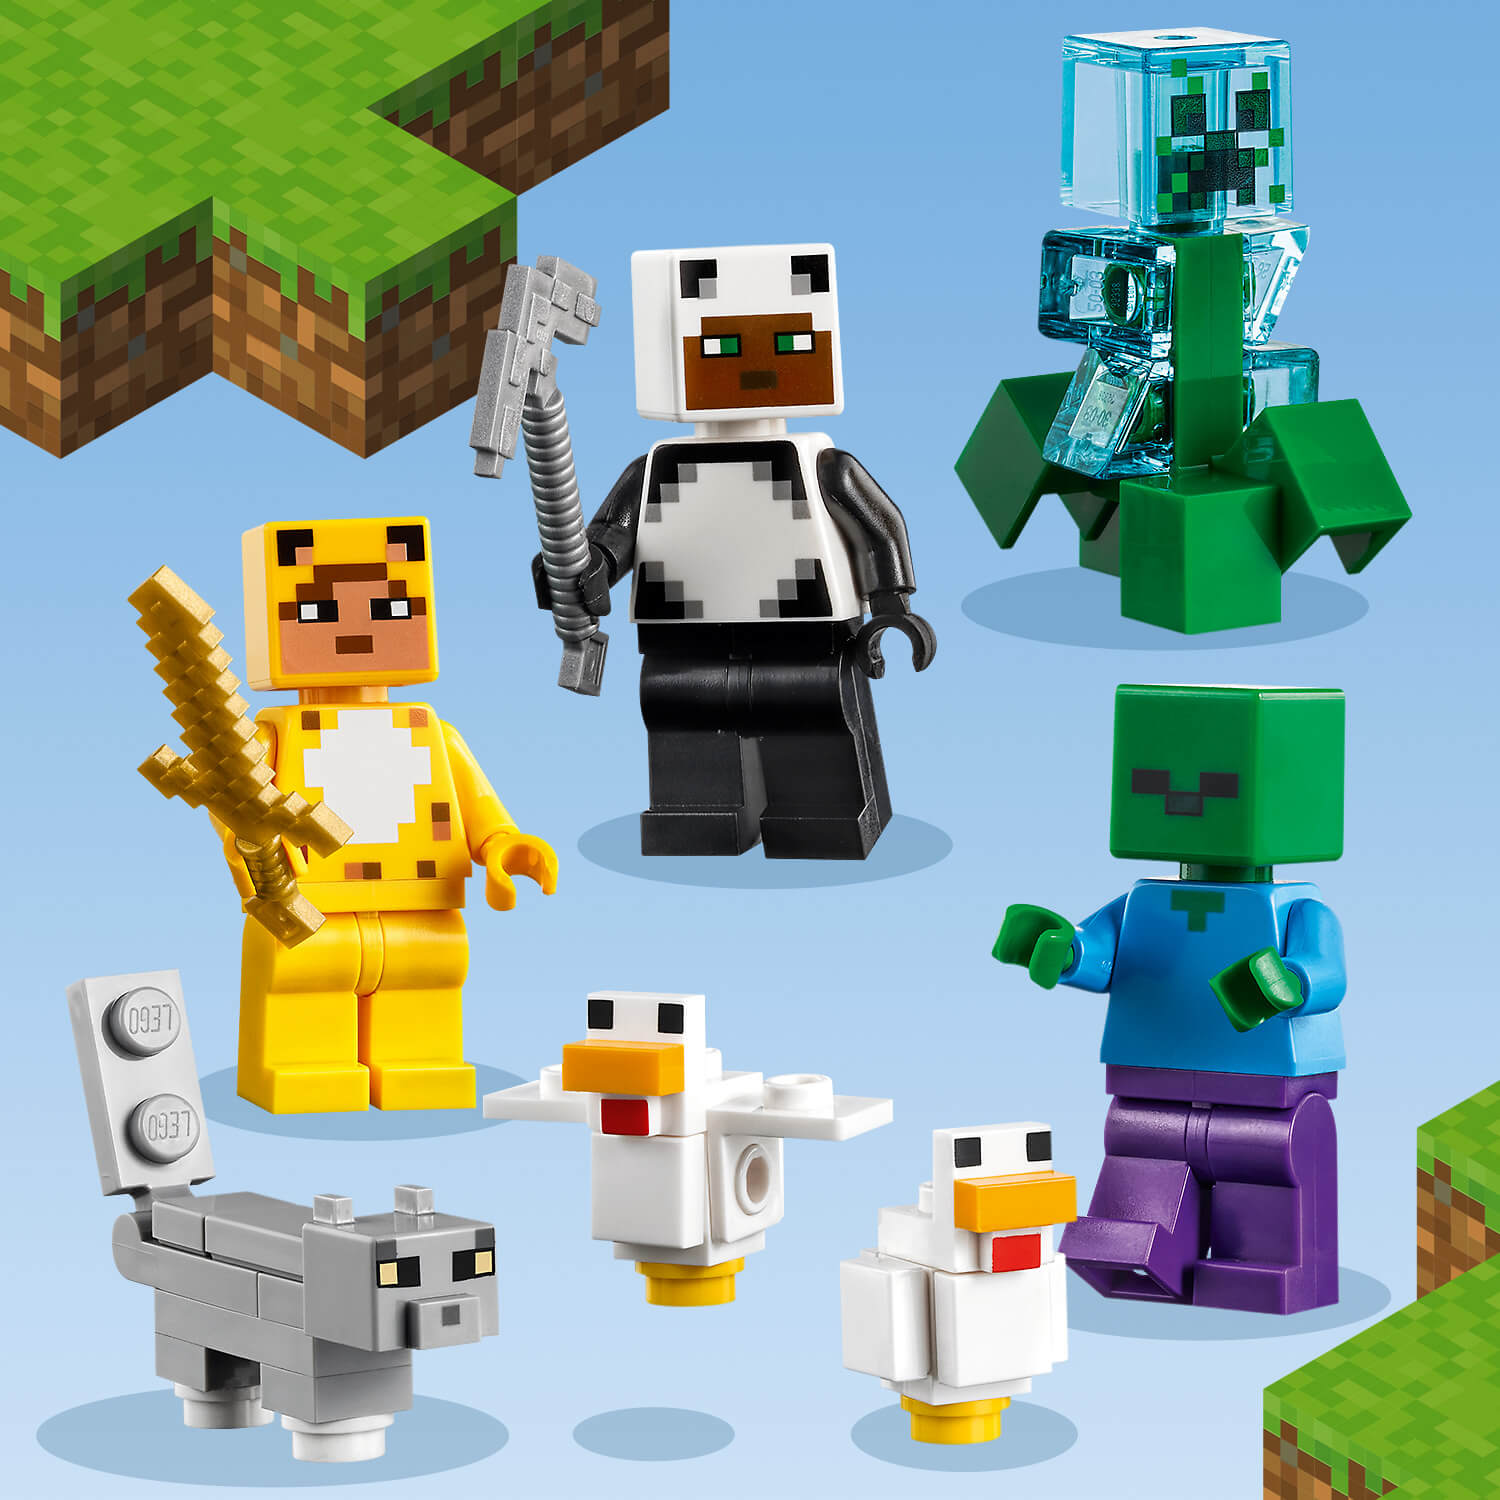 Ikonické postavy z Minecraftu